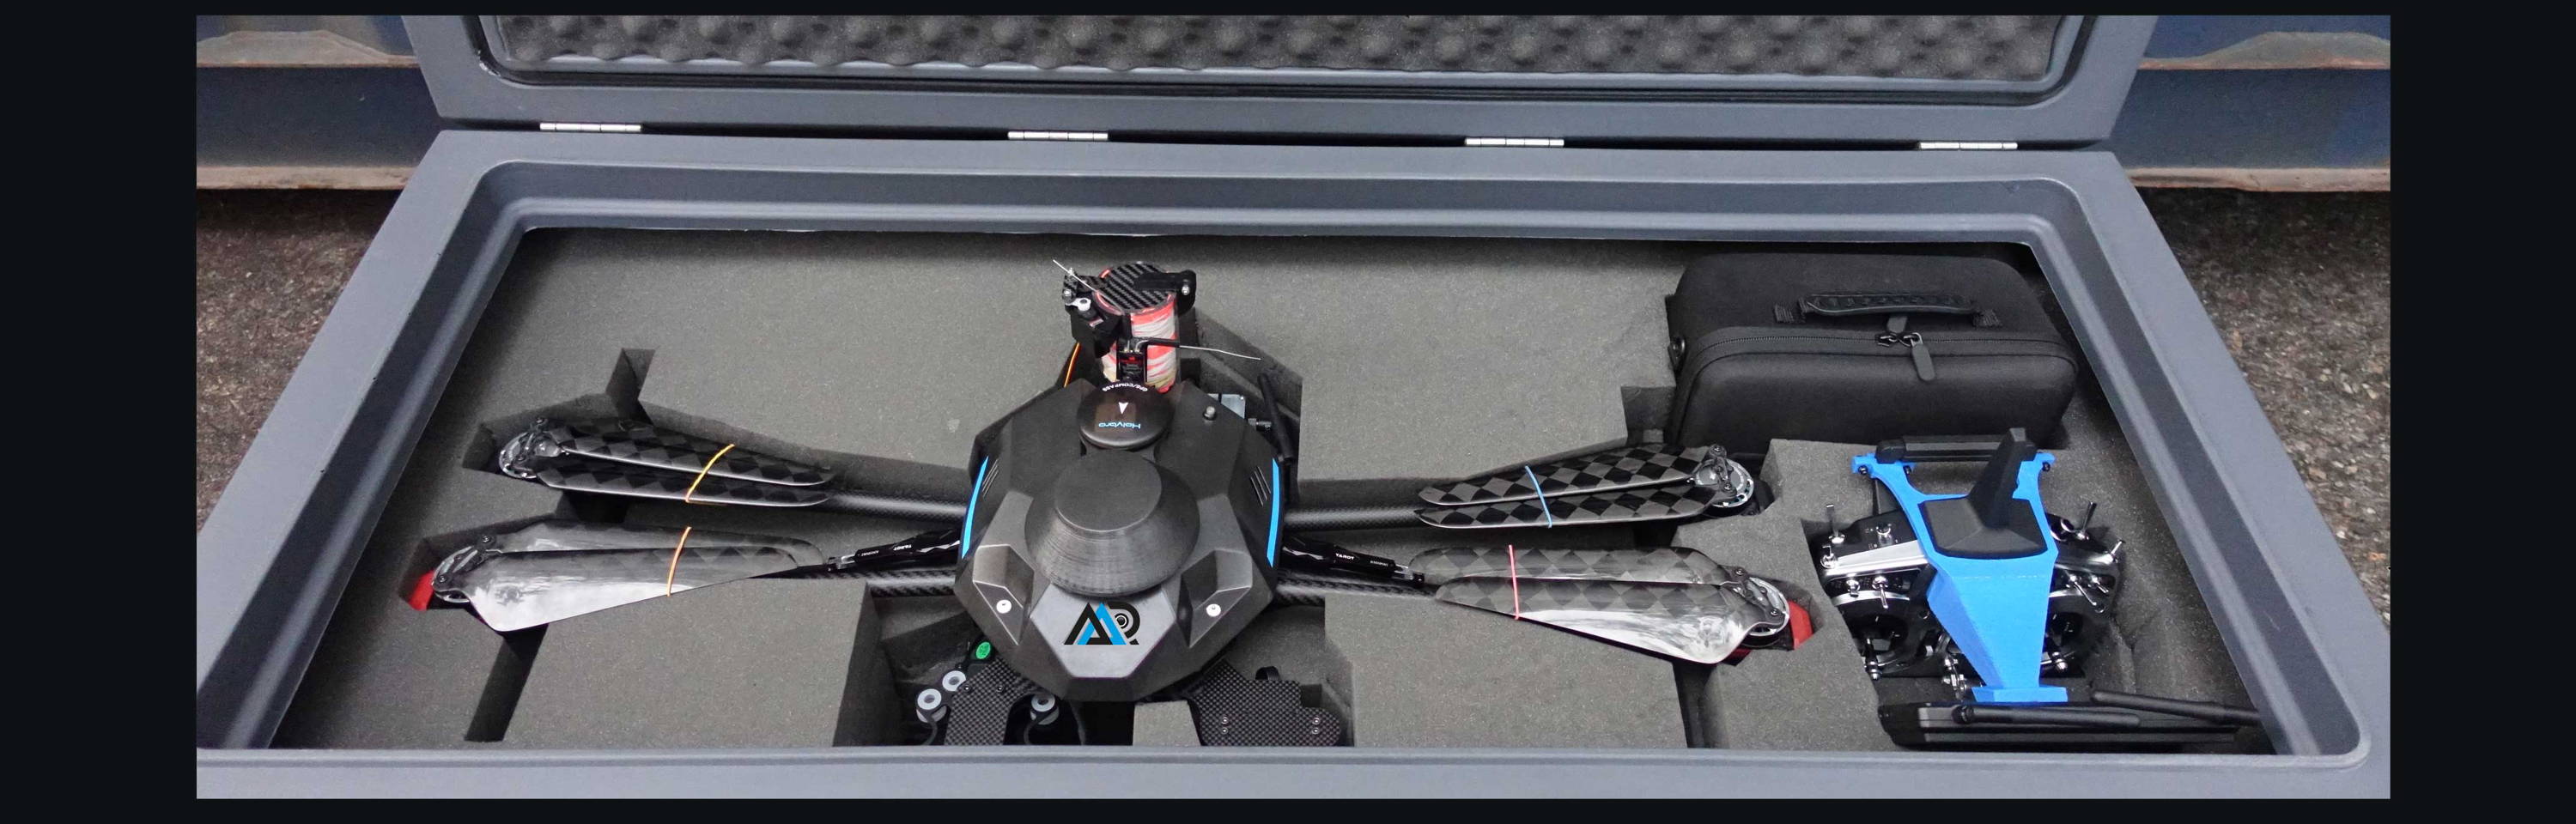 3d robotics, solo, 3d robotics, iris 3d robotics, pixhawk, how to make a drone, quadcopter, best drone designs, 